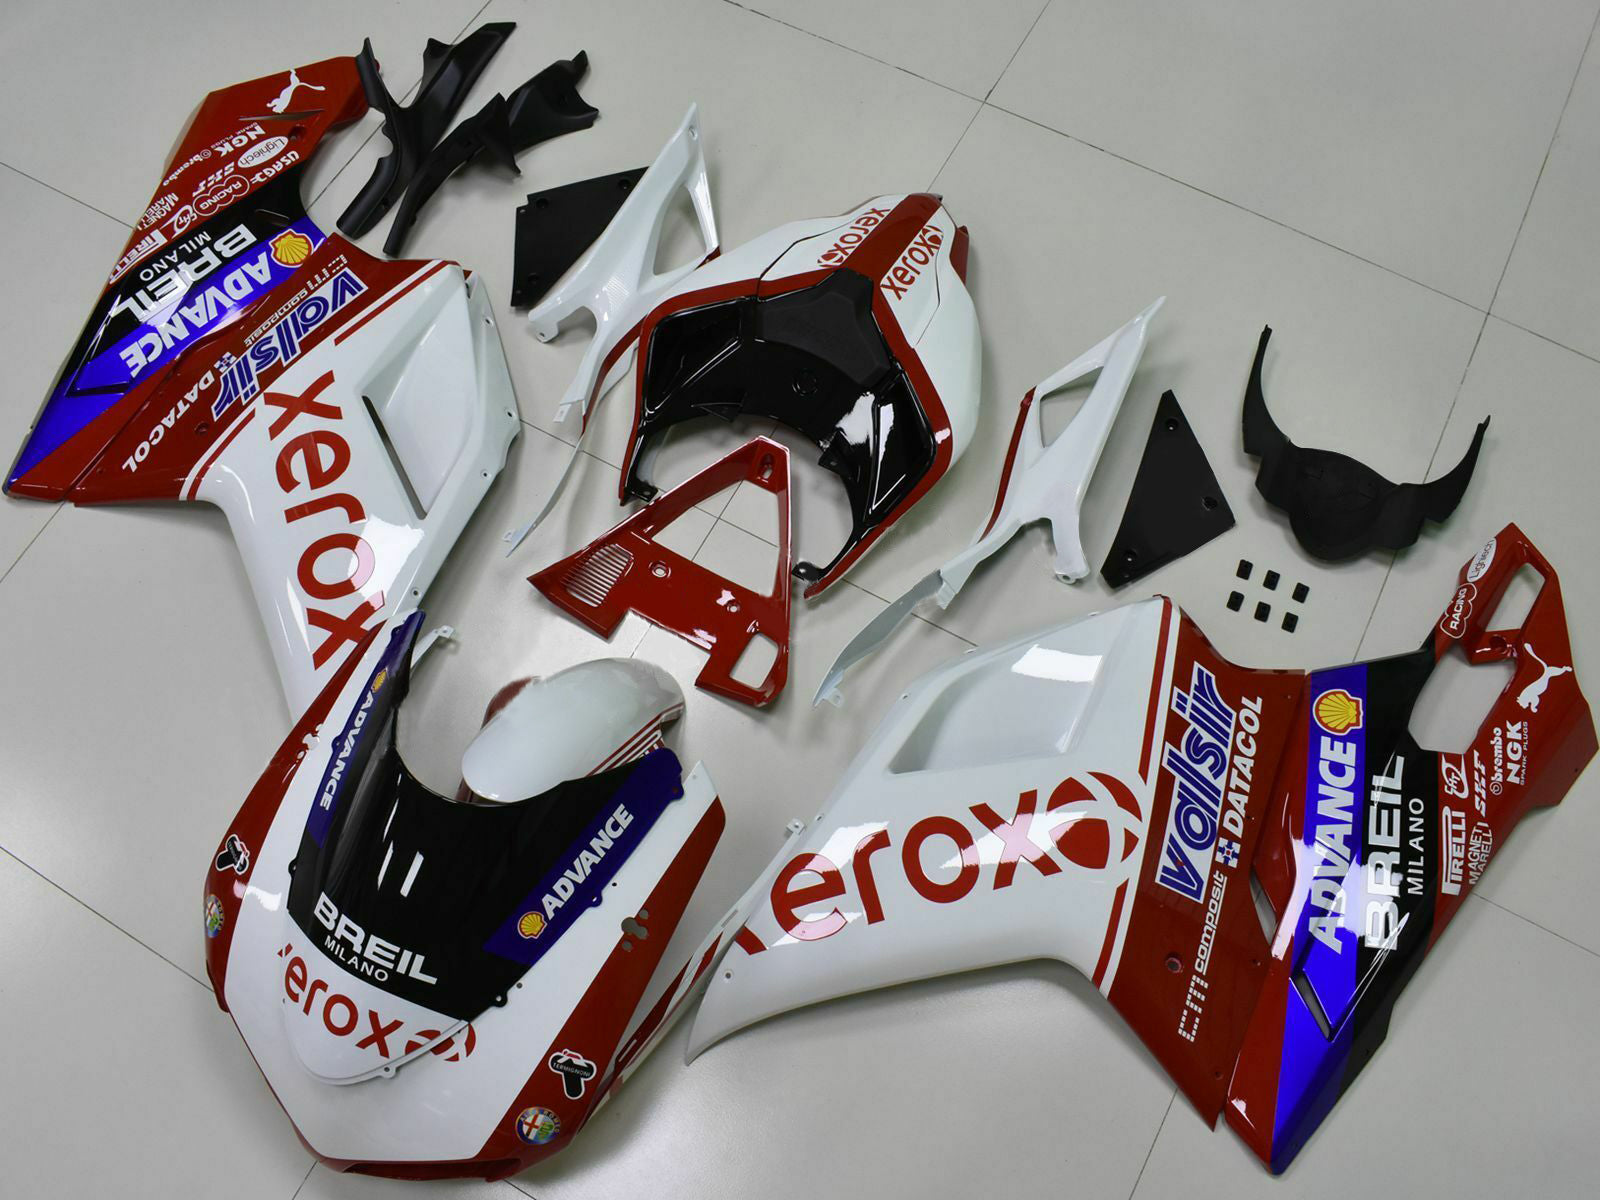 Amotopart Fairings 2007-2012 Ducati 1098 1198 848 Fairing Kit